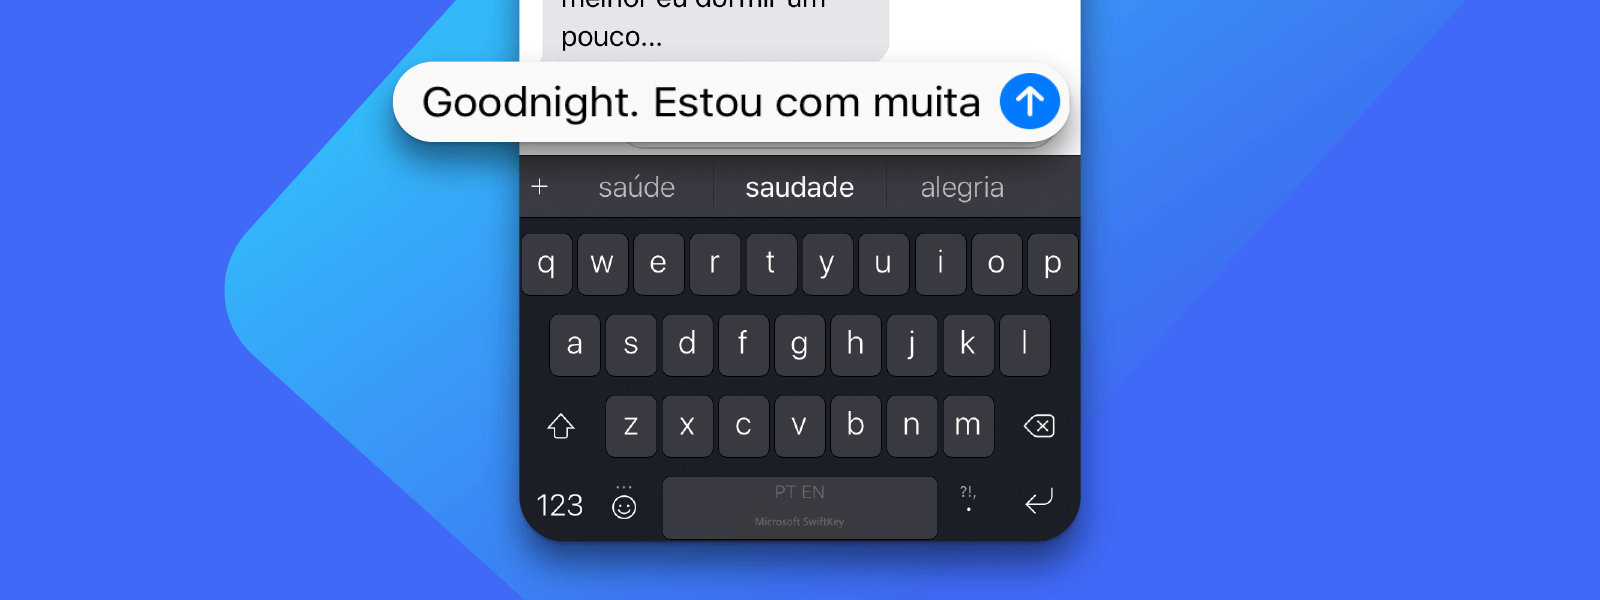 iPhone com SwiftKey para digitar em vários idiomas